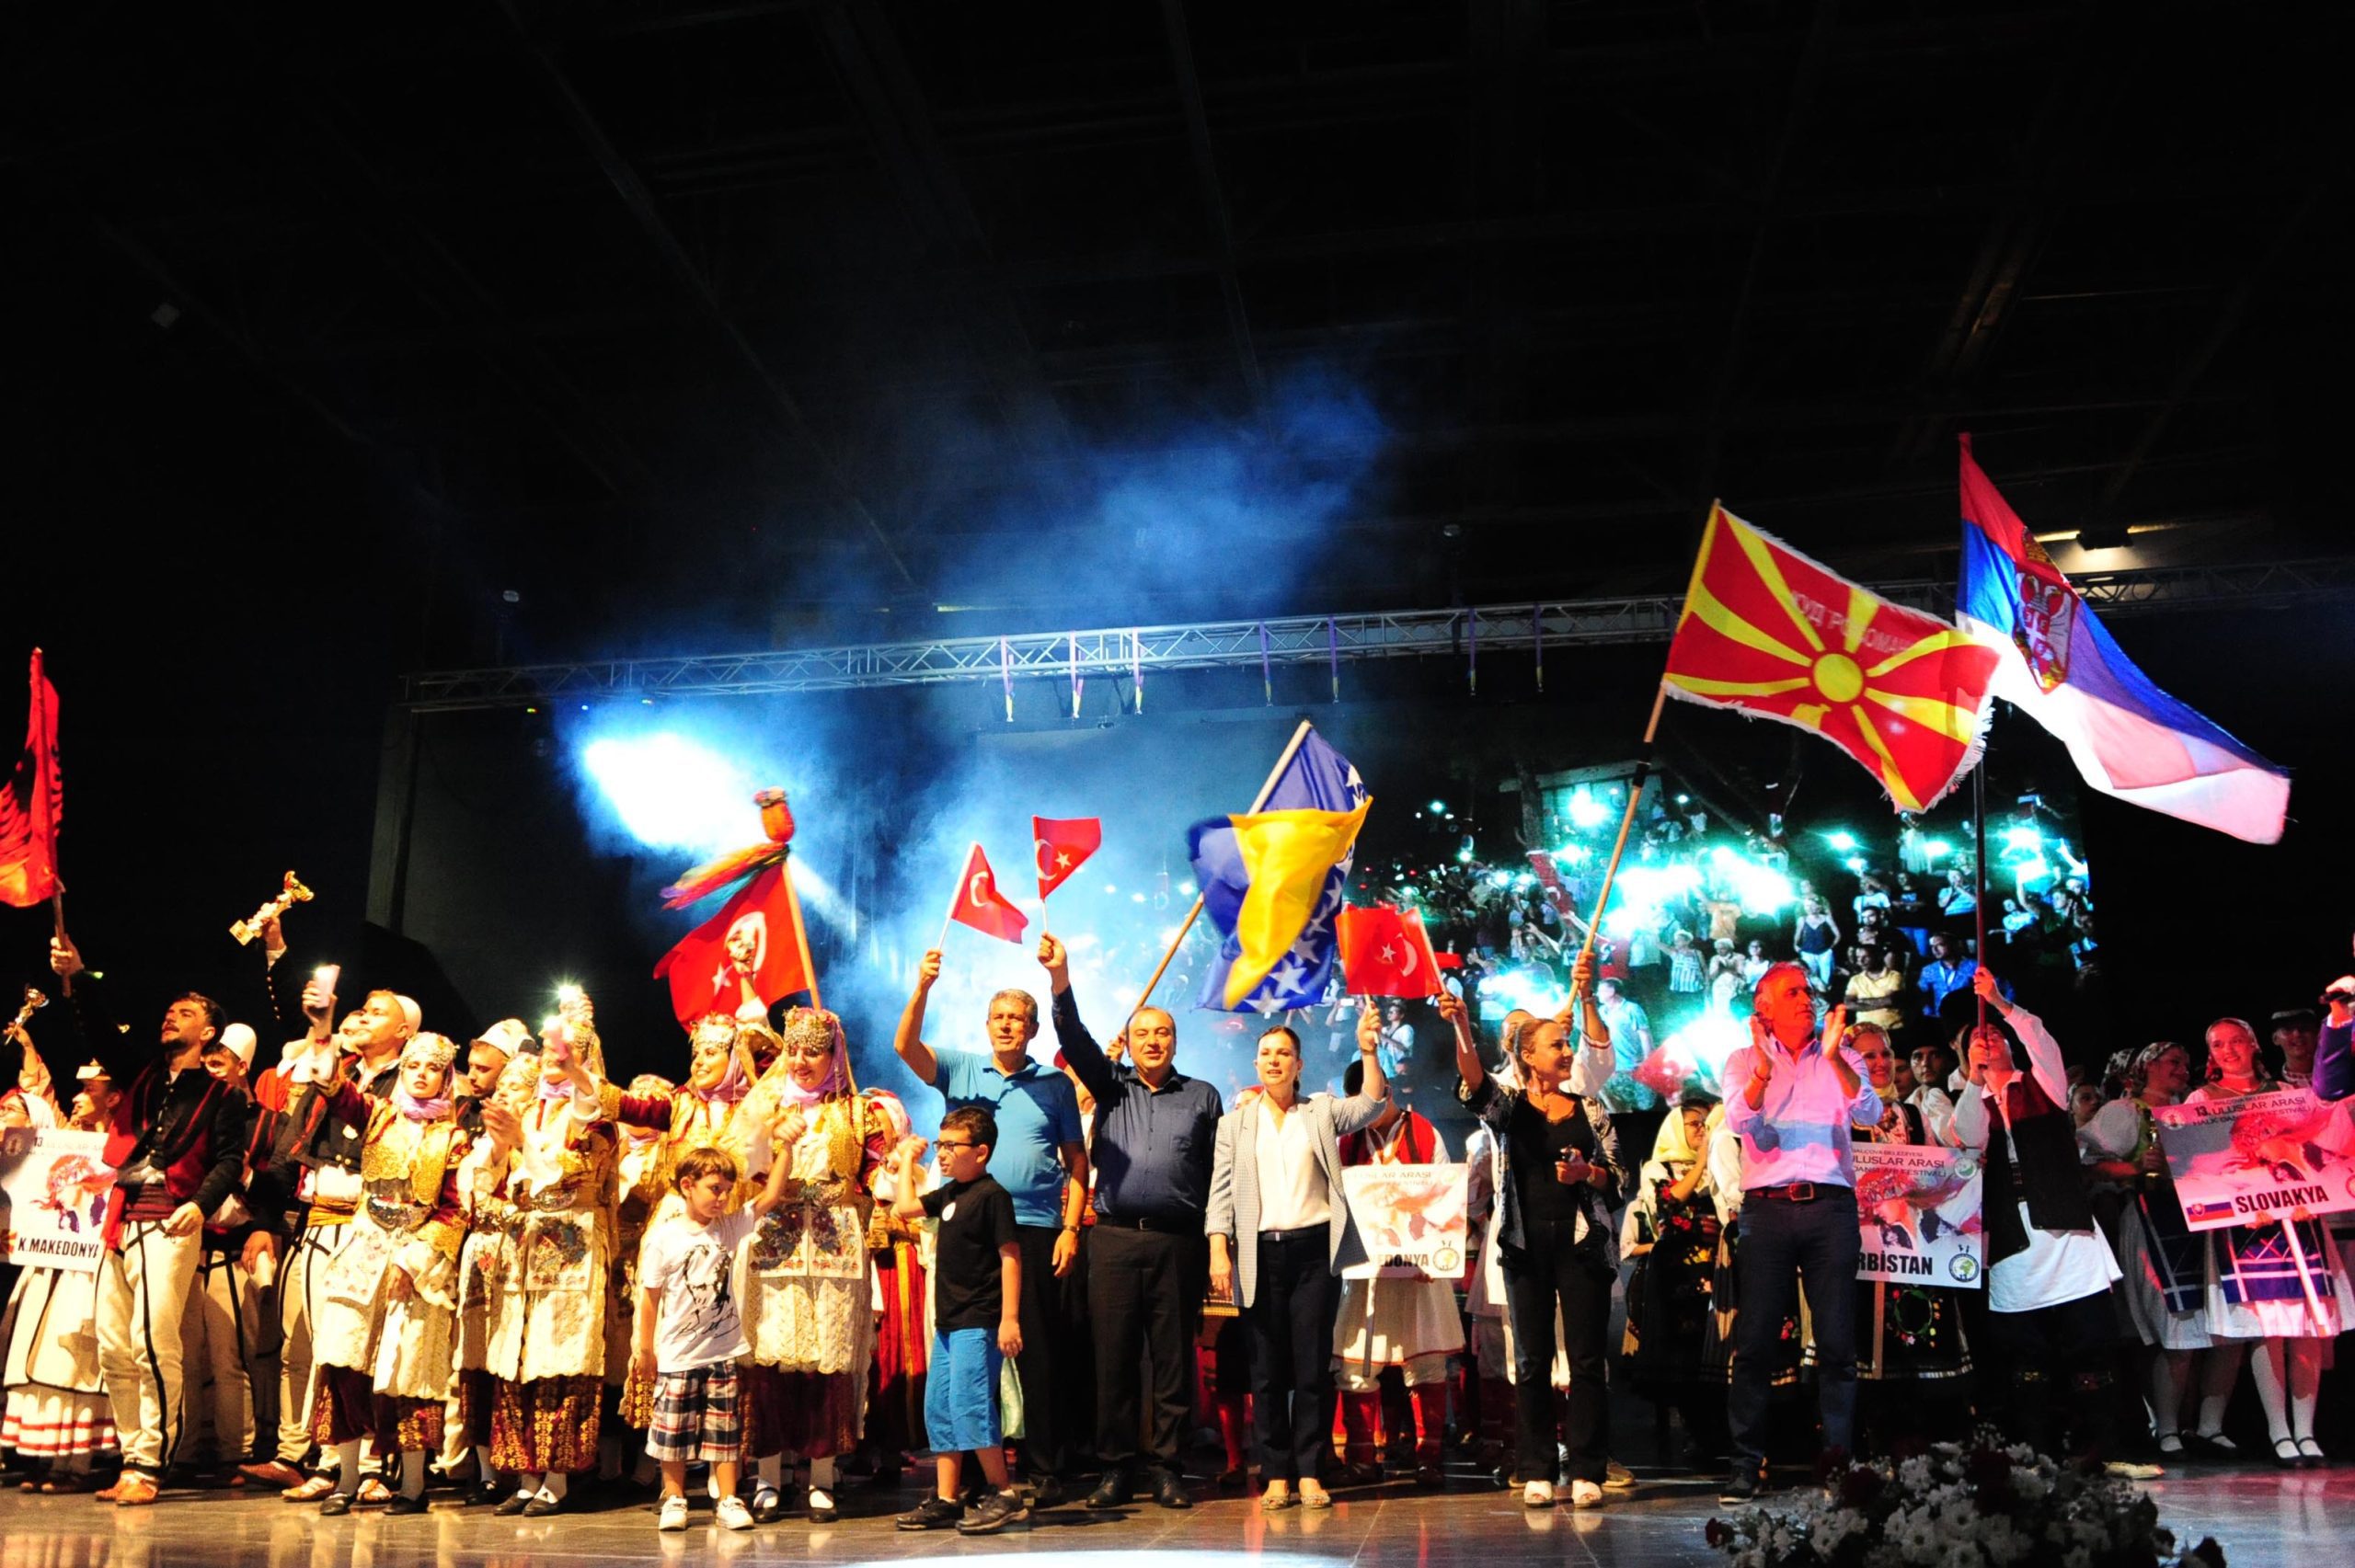 zafer bayramı 30 Ağustos Zafer Bayramı’nın 100. Yıl kutlamaları ile Uluslararası Halk Dansları Festivali’nin Gala Gecesi birleşince Balçova’da muhteşem bir coşku yaşandı. Binlerce kişi korteje katılırken, yabancı konukların gösterileri izleyenleri büyüledi.